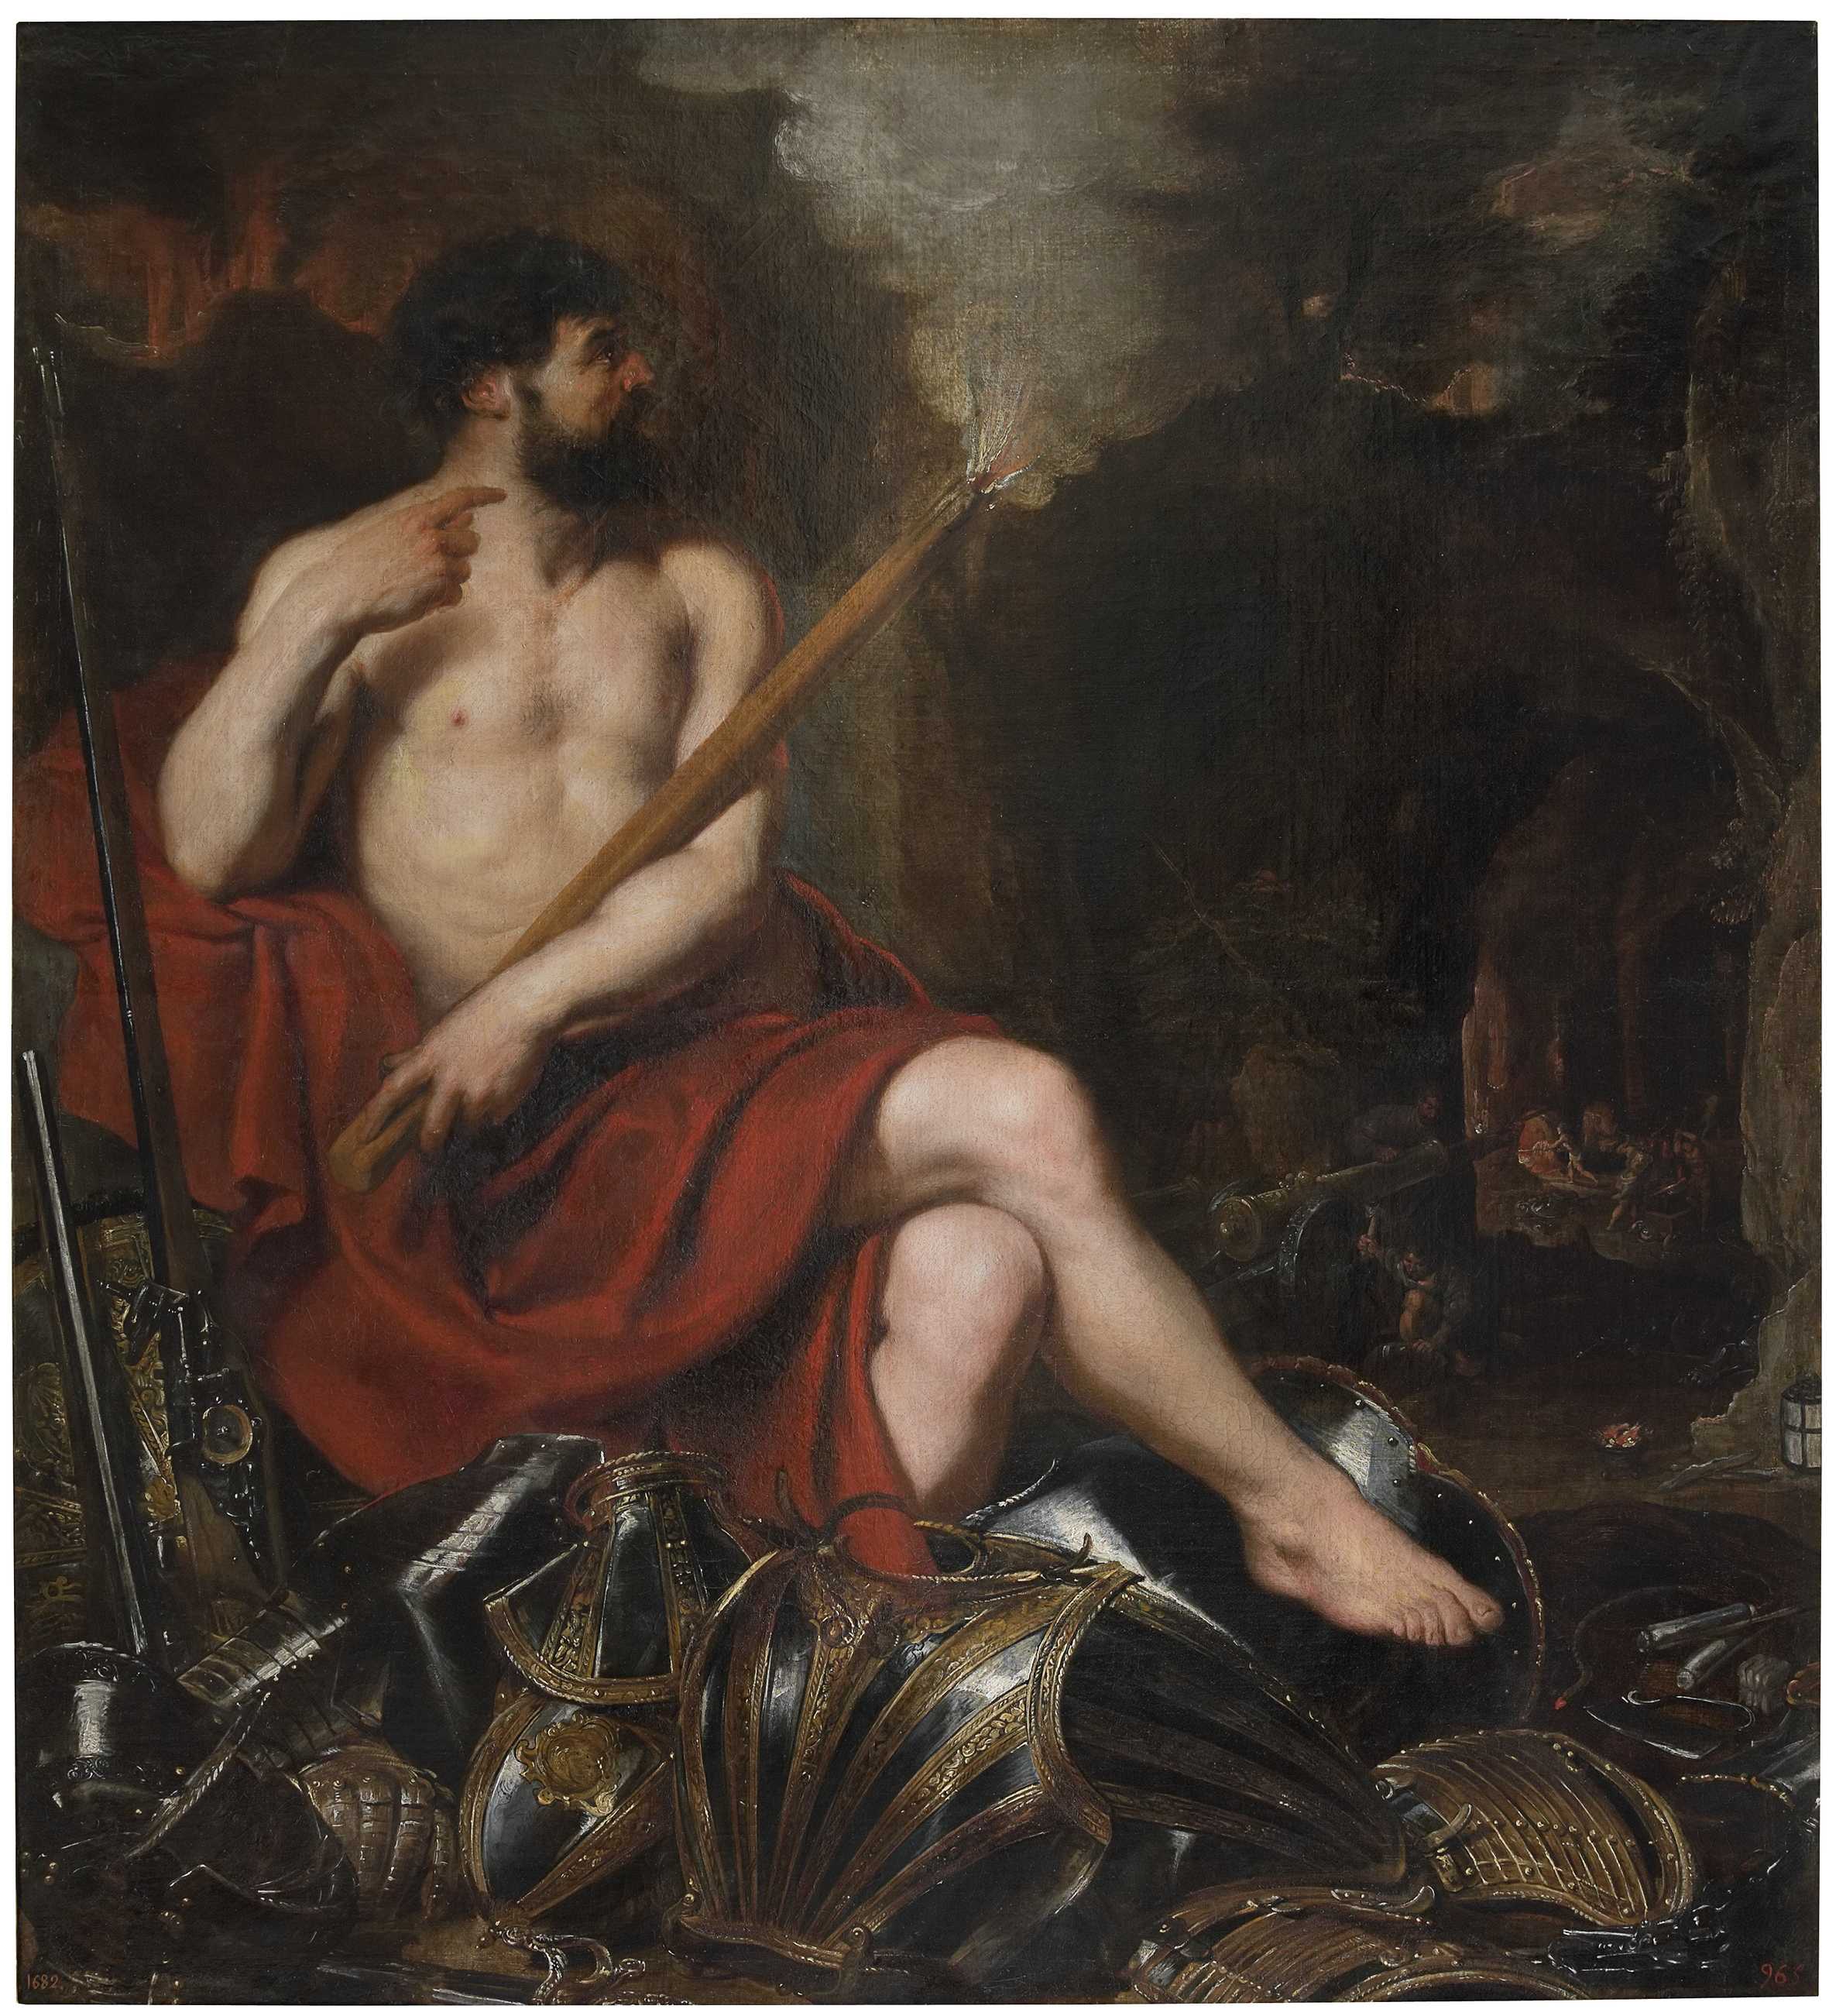 Pedro Pablo Rubens, Vulcano y el fuego, siglo XVII. Óleo sobre lienzo. © Museo Nacional del Prado.